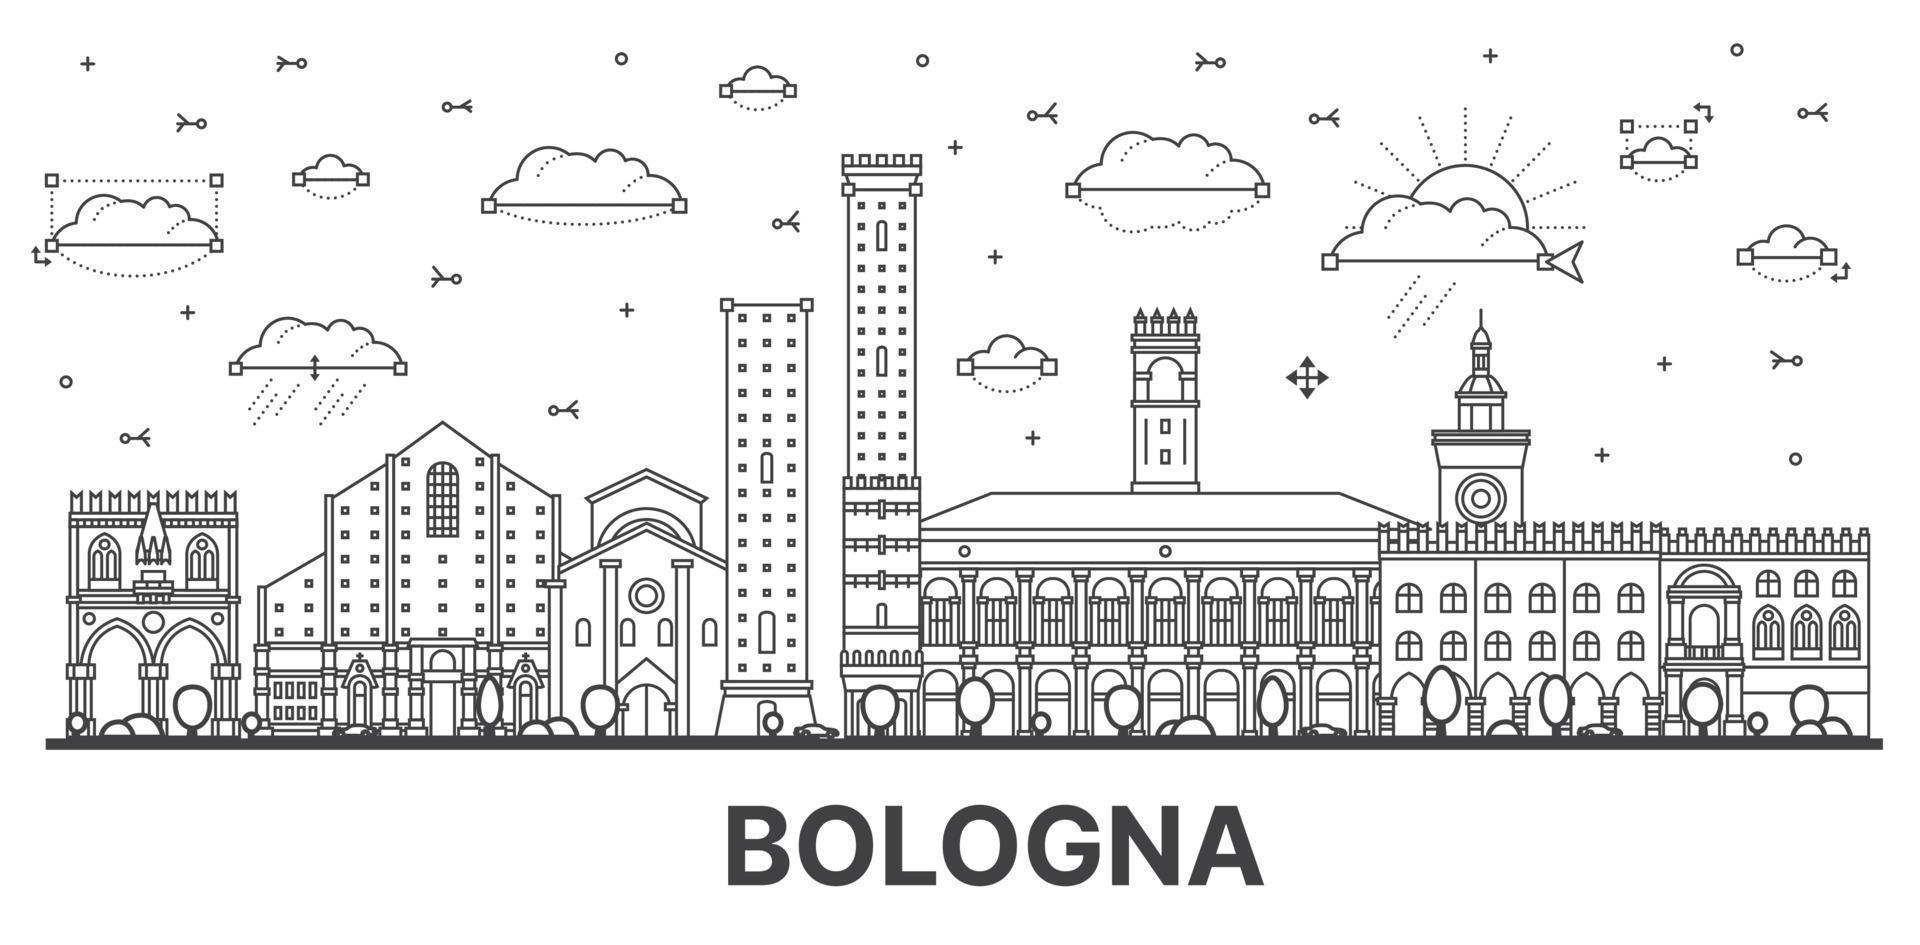 delineie o horizonte da cidade de Bolonha Itália com edifícios históricos isolados no branco. vetor